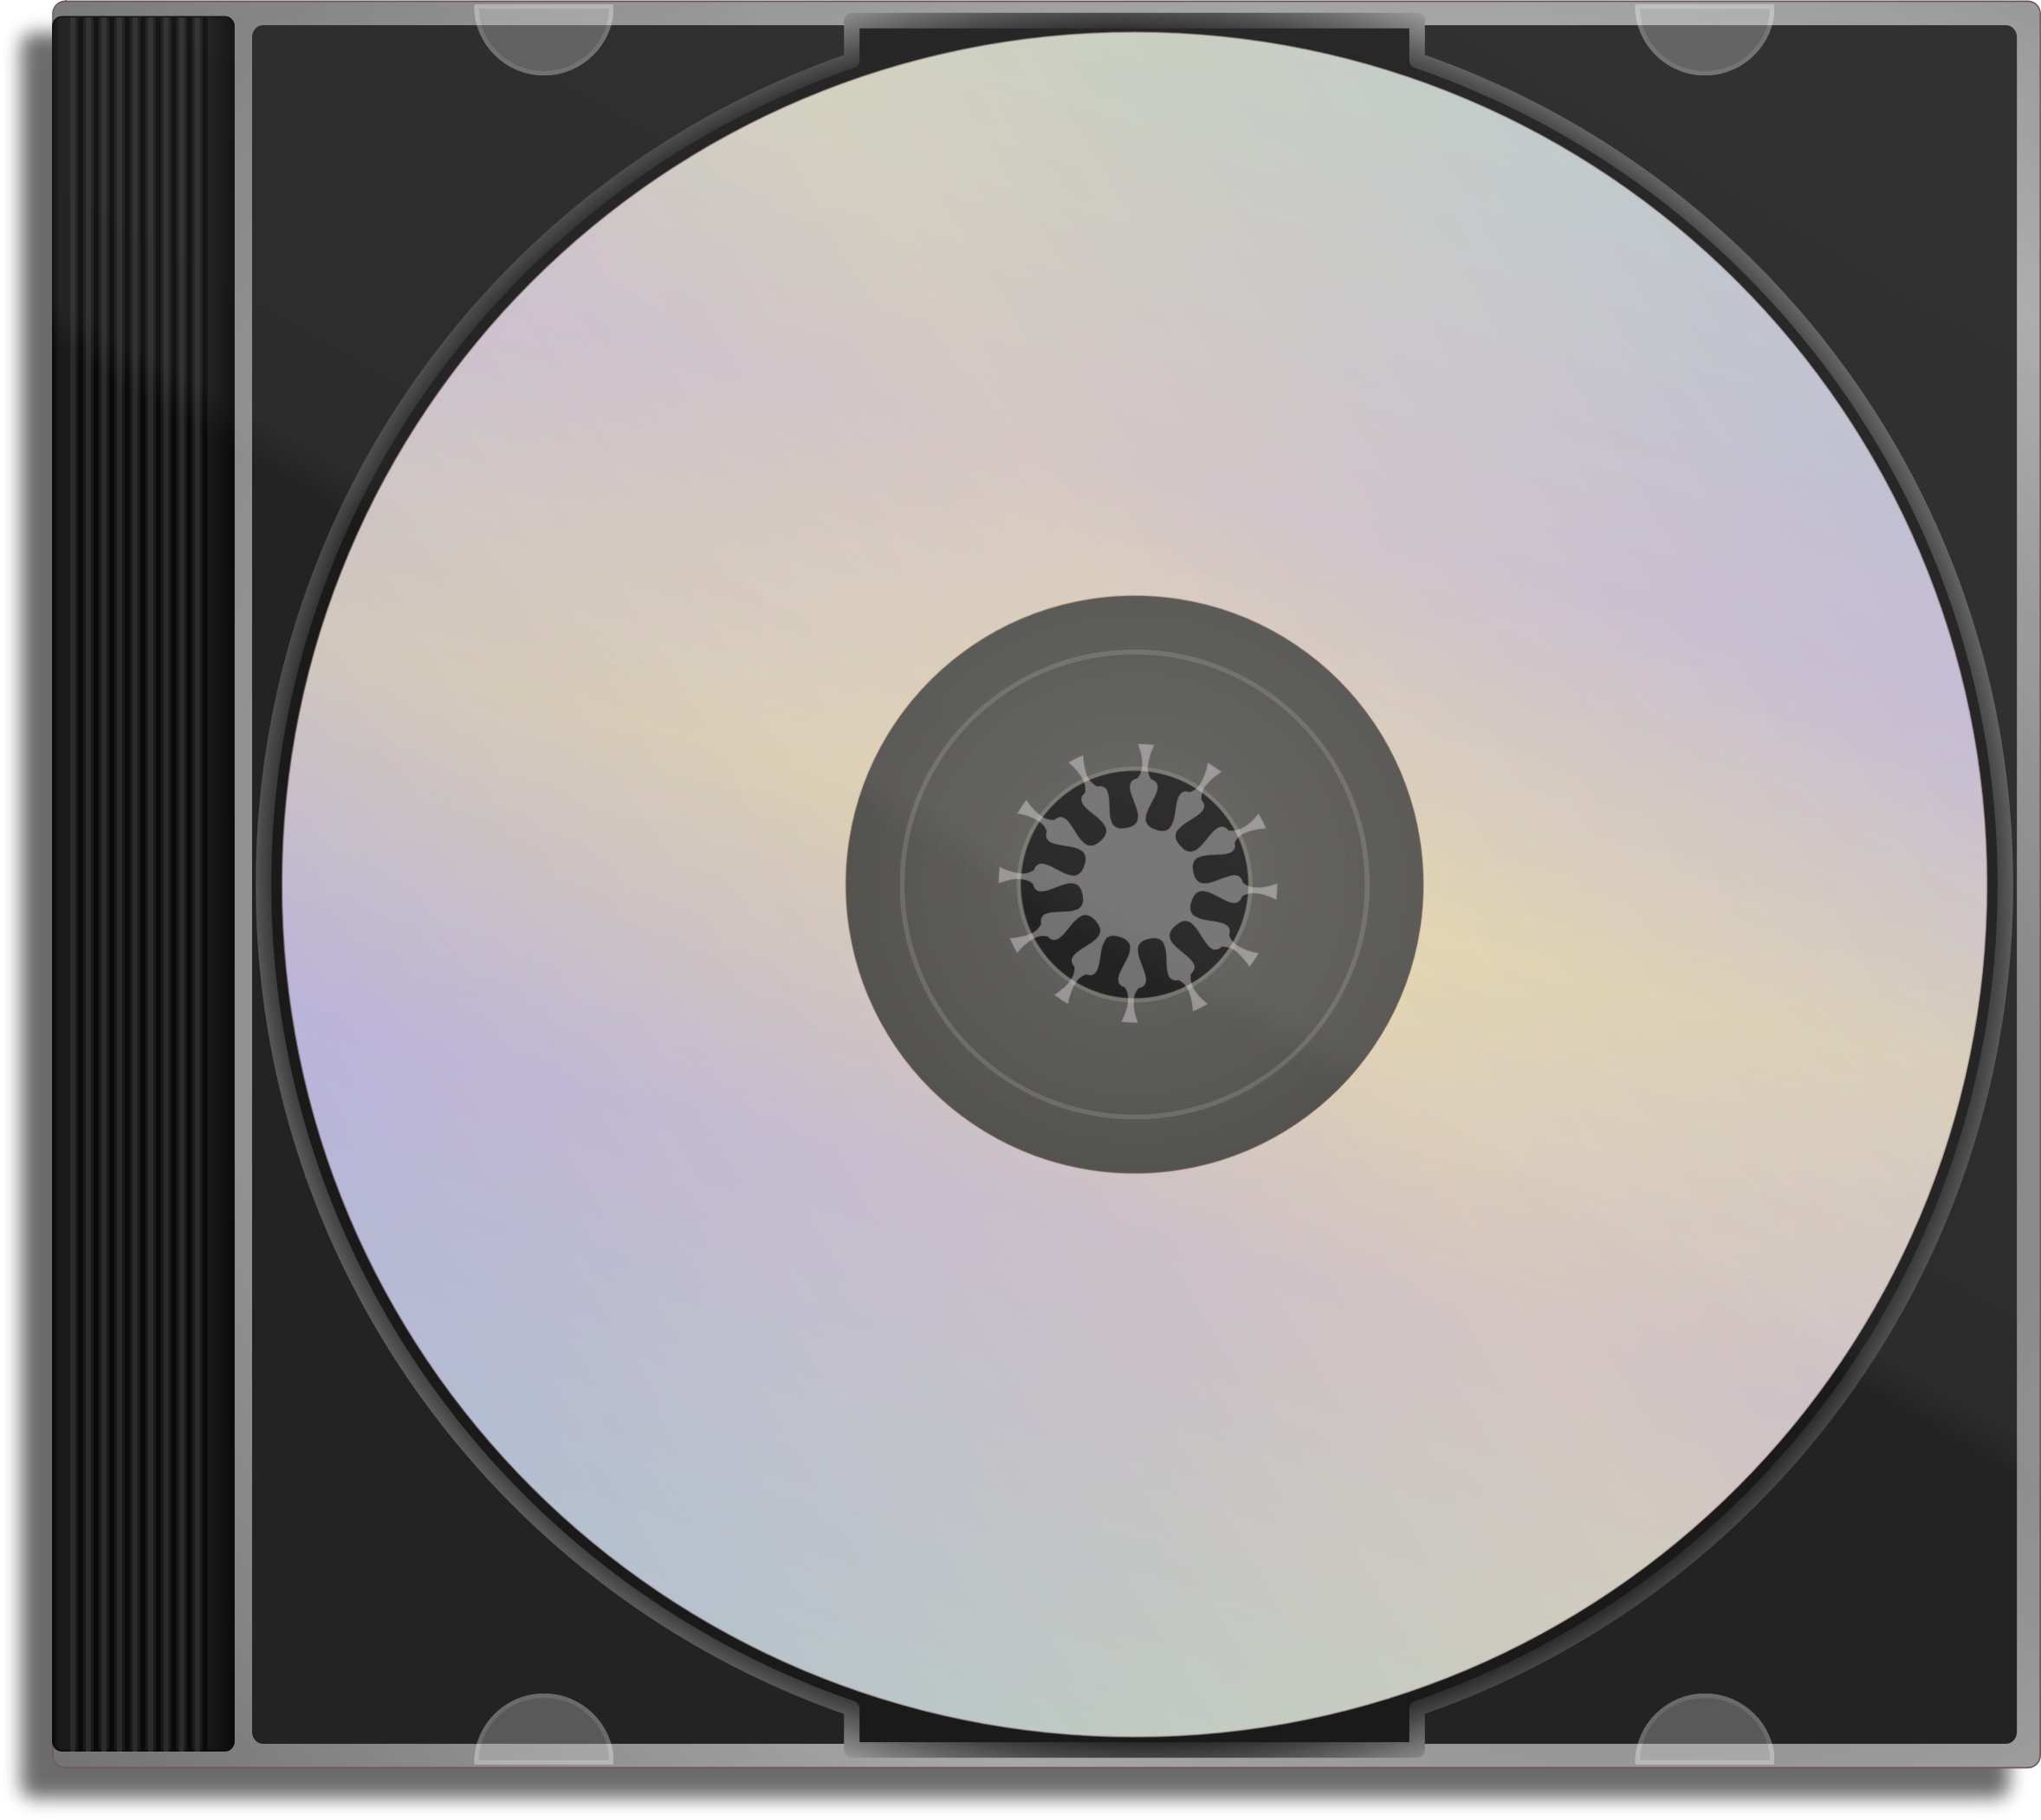 Обложка сд. CD - Compact Disk (компакт диск). CD-ROM (Compact Disk ROM). 1 СД диск. CD диск в упаковке.